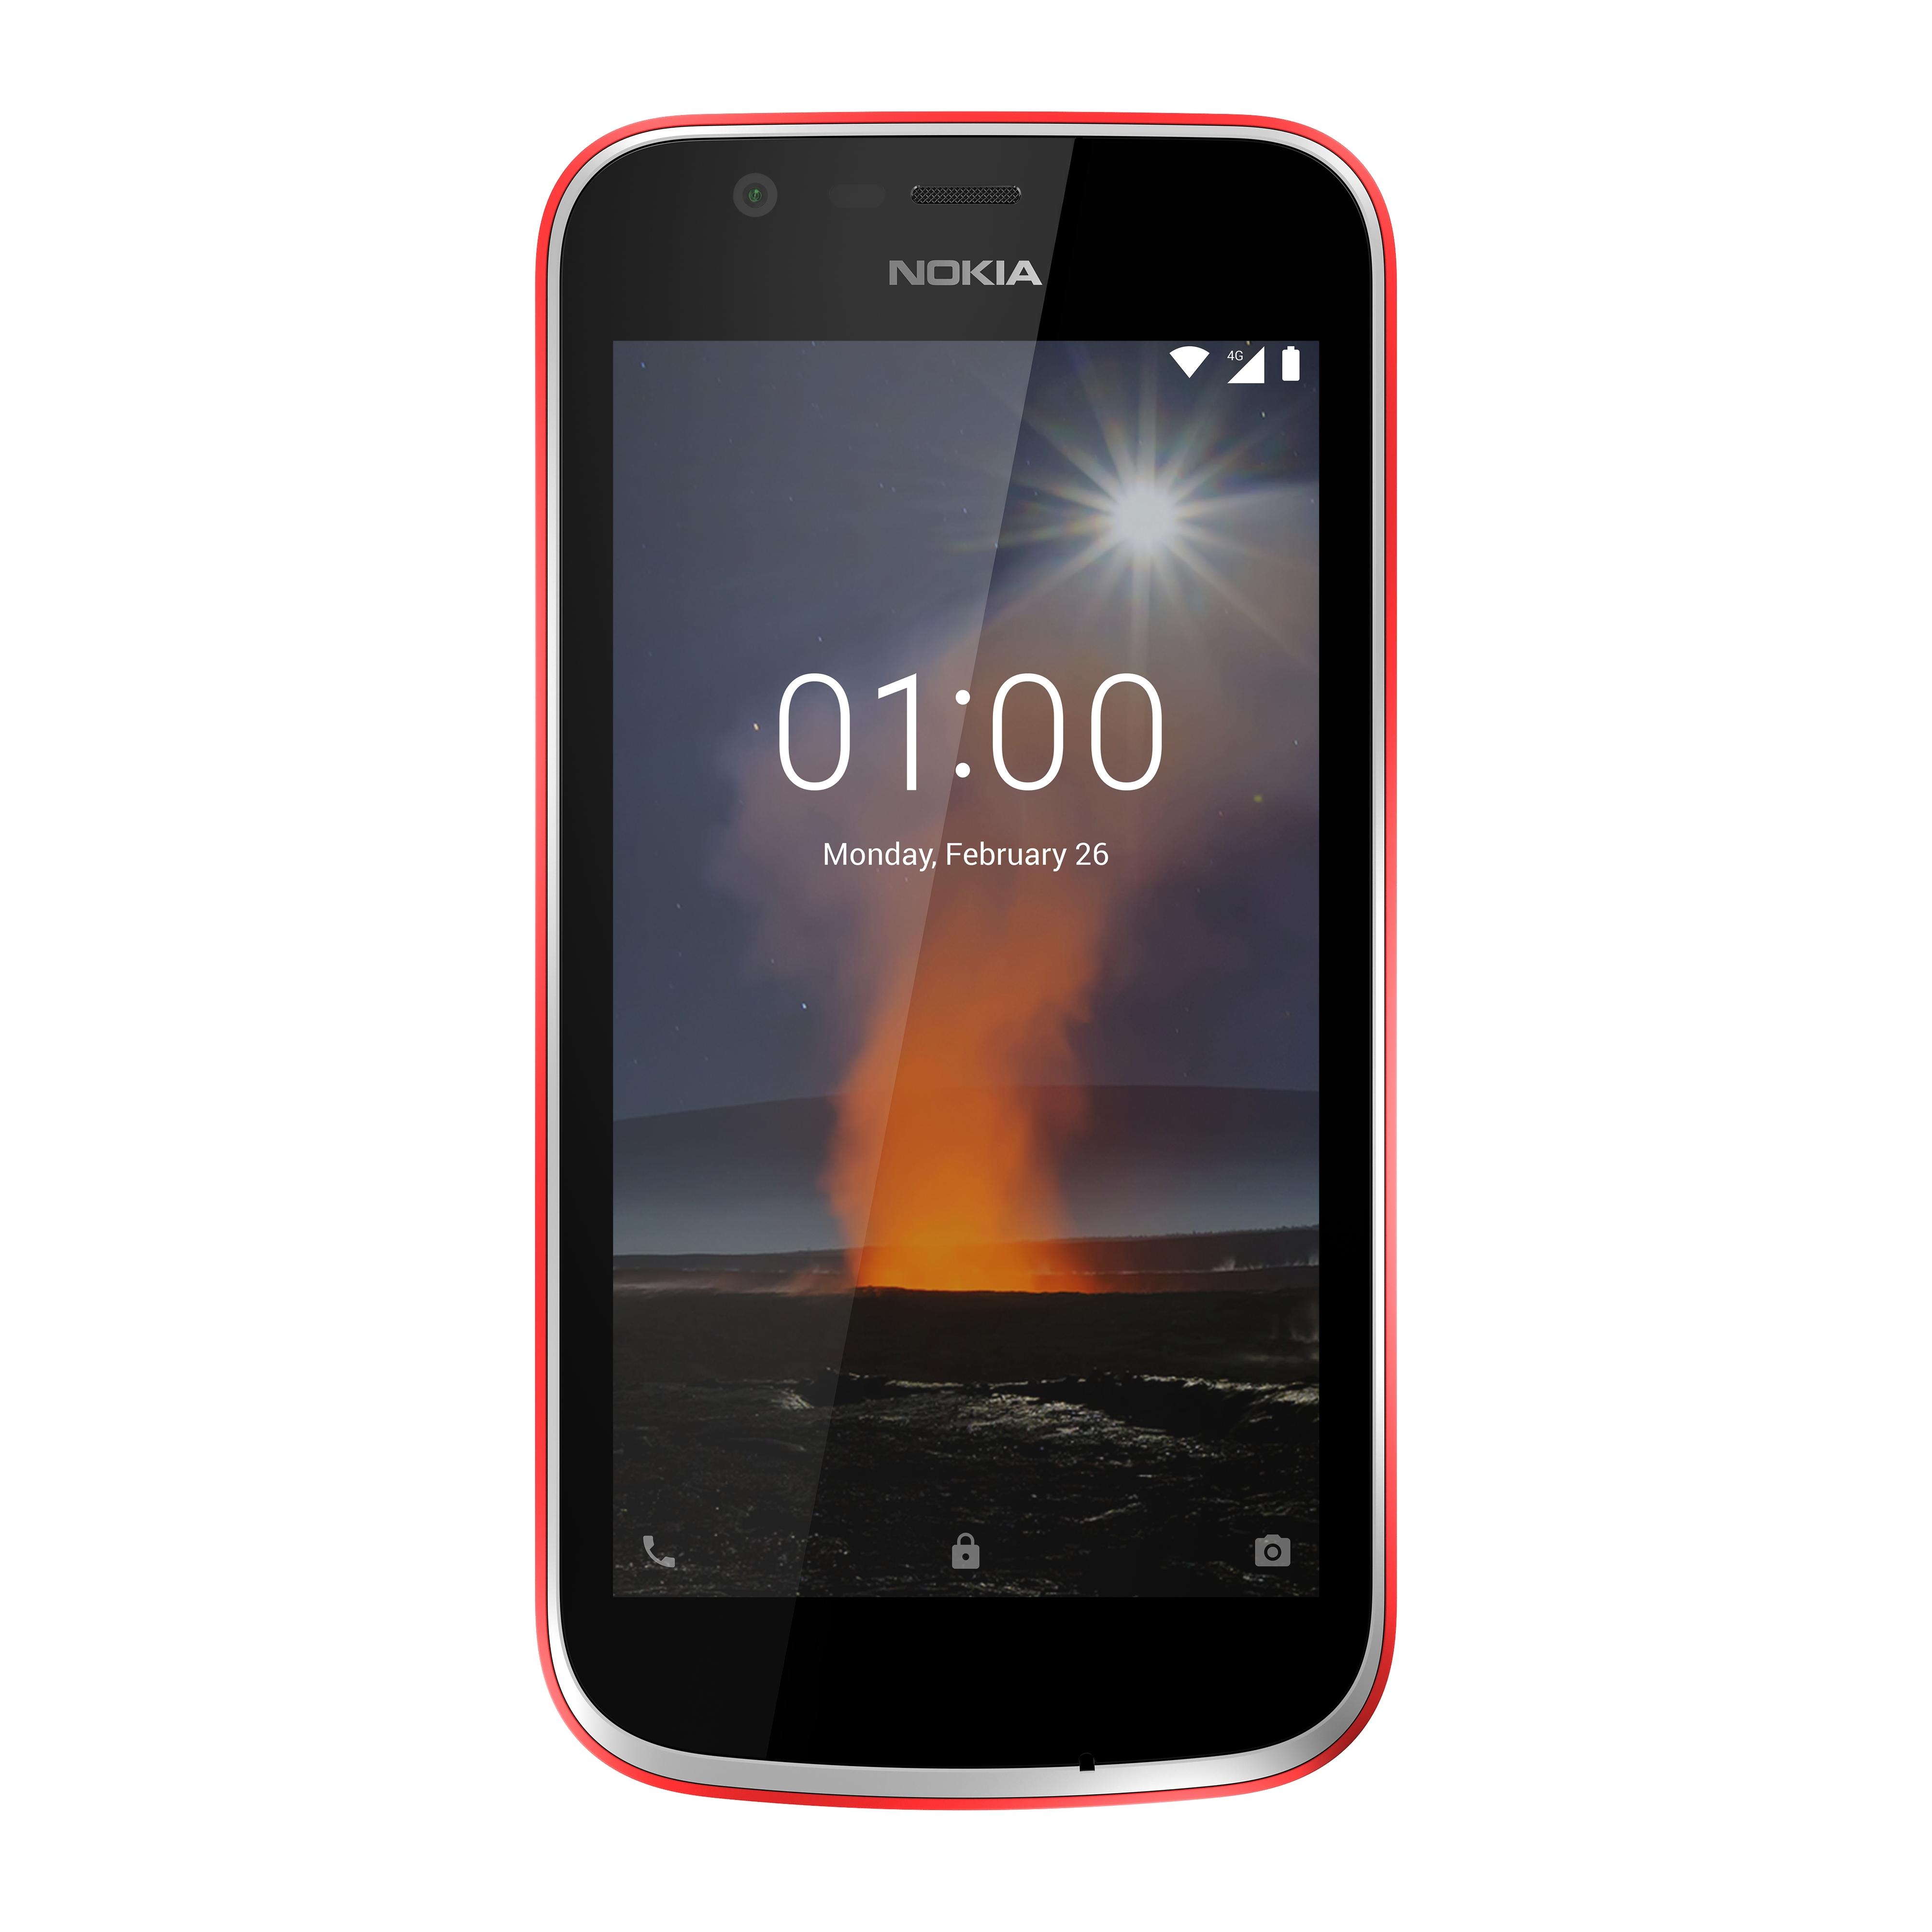 Nokia 1 er en av de aller første modellene i det nye Android Go-programmet. Serien skal sørge for enkle, billige og raske telefoner.